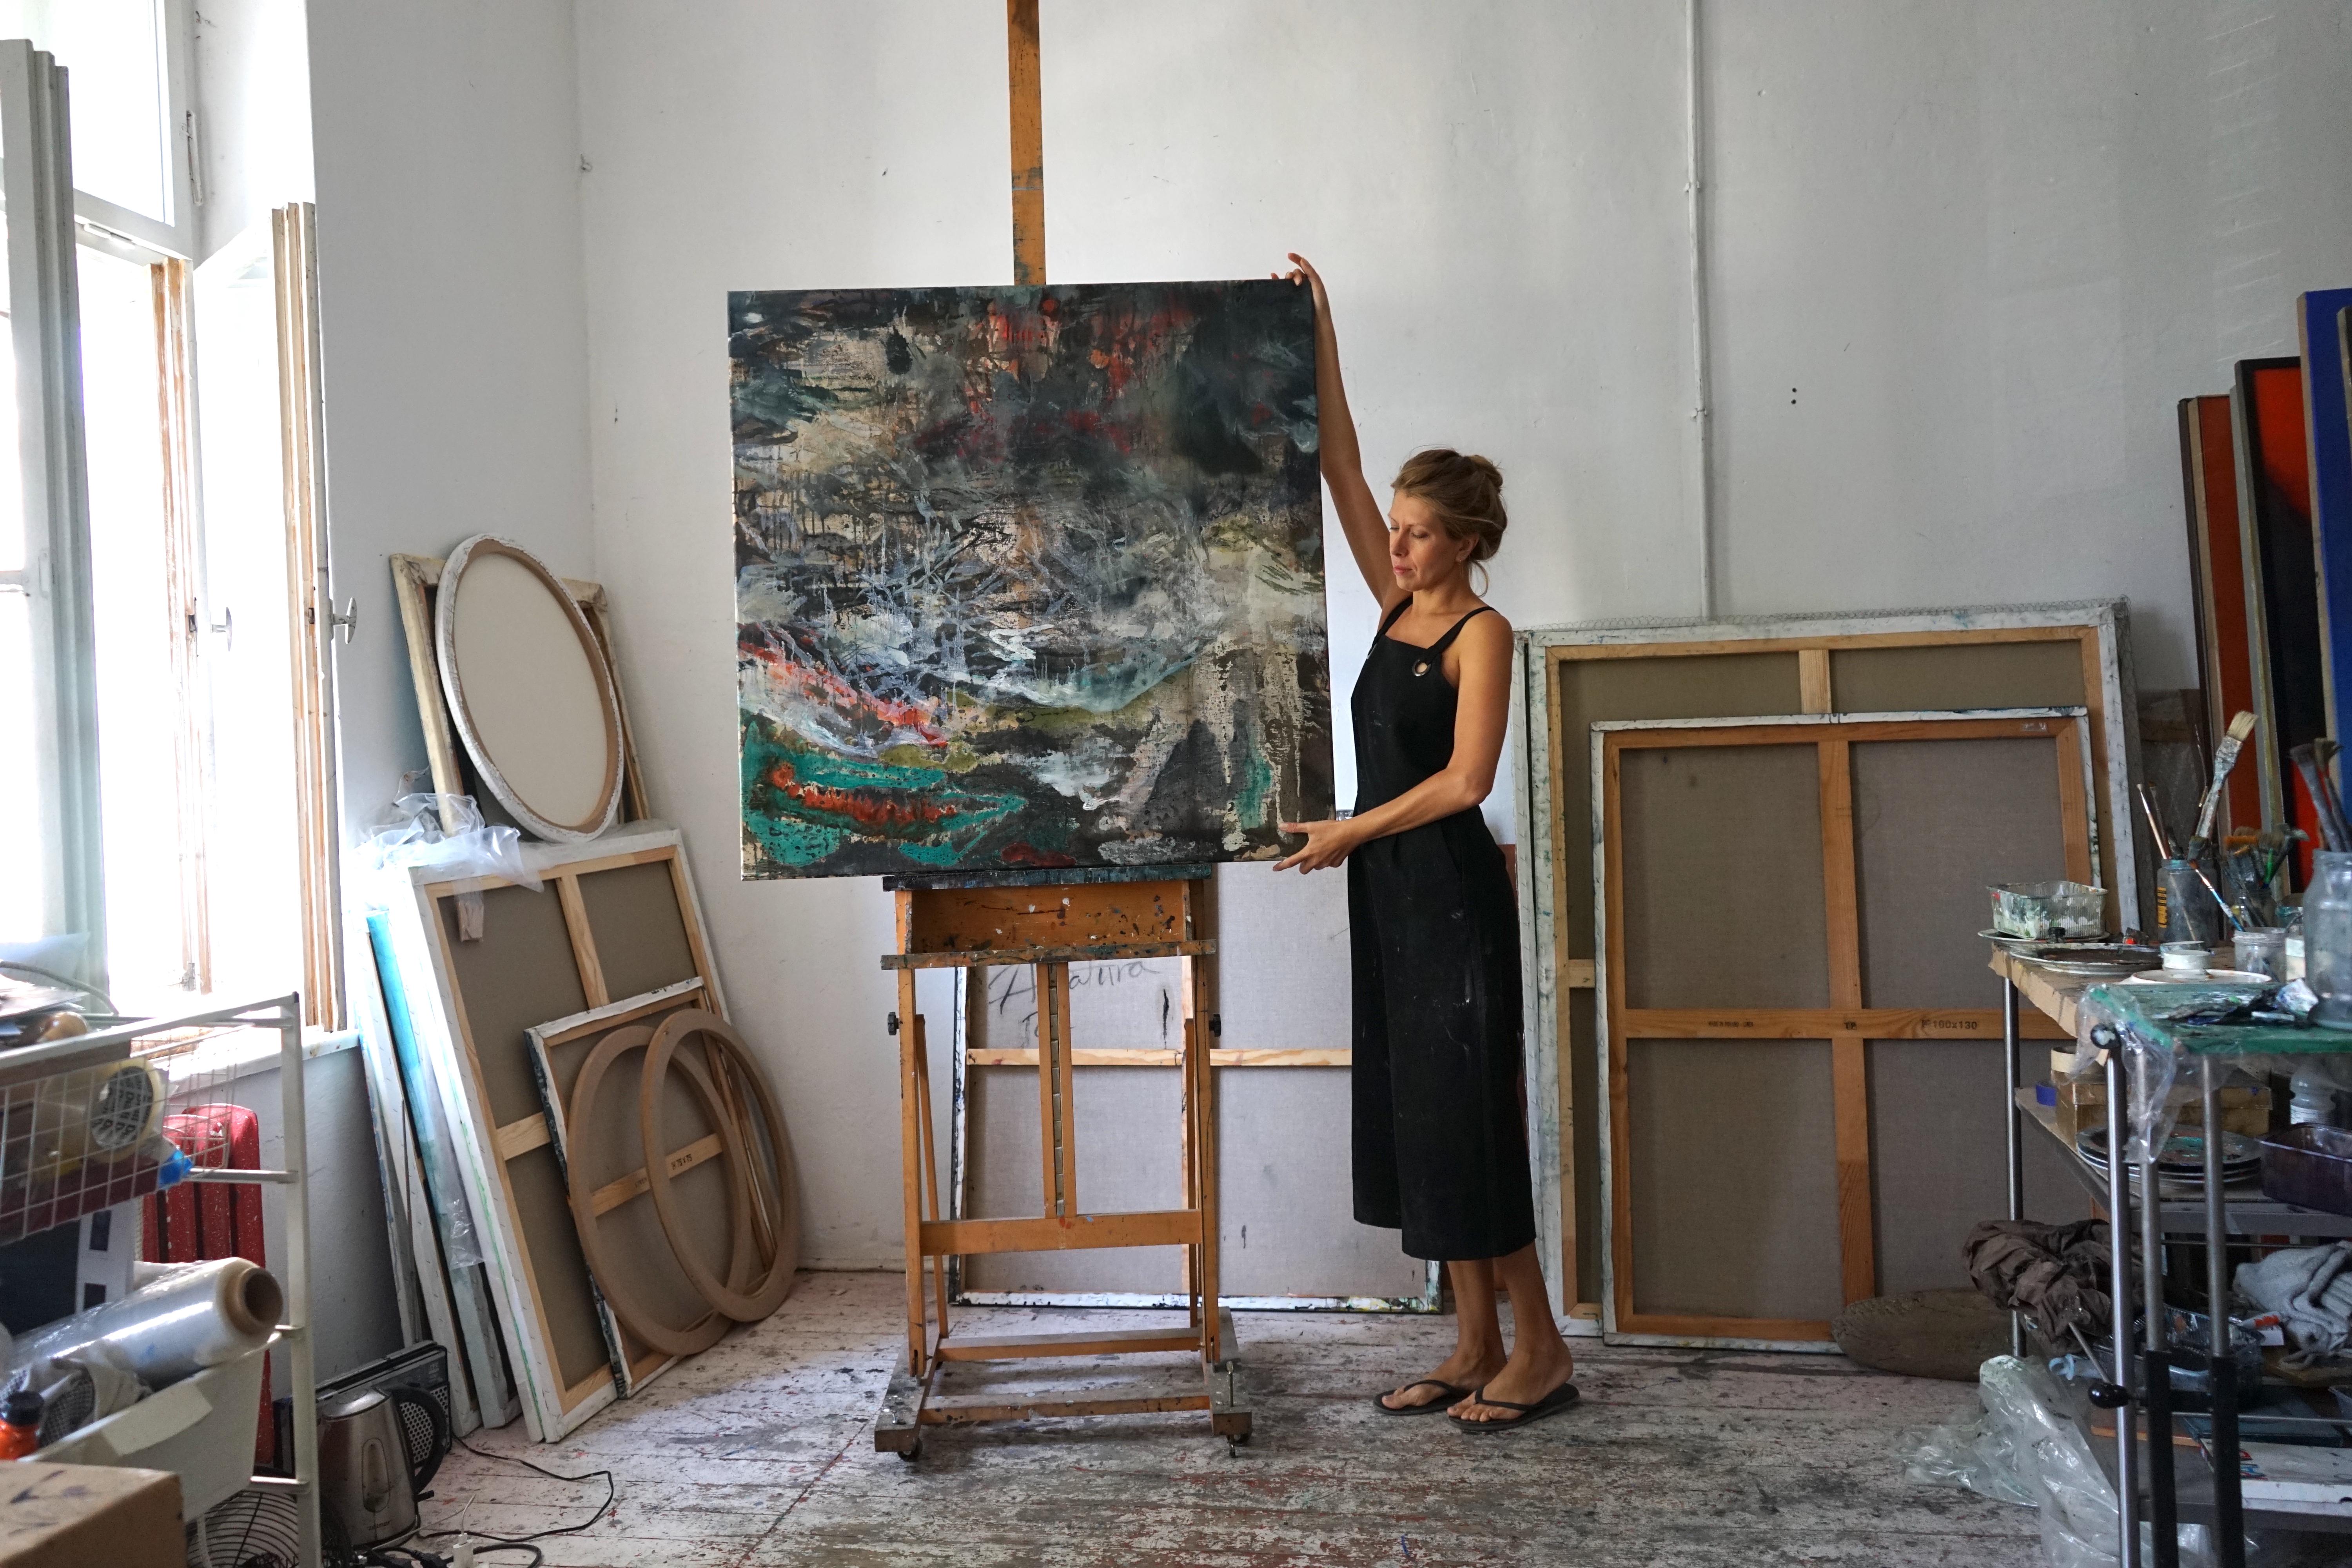 Technique personnelle sur toile : huile et crayons de couleur

Aleksandra Batura (née en 1982 à Augustów) est une artiste basée à Varsovie. Elle a obtenu un doctorat en beaux-arts à l'Académie des beaux-arts de Cracovie. Elle a étudié à la faculté